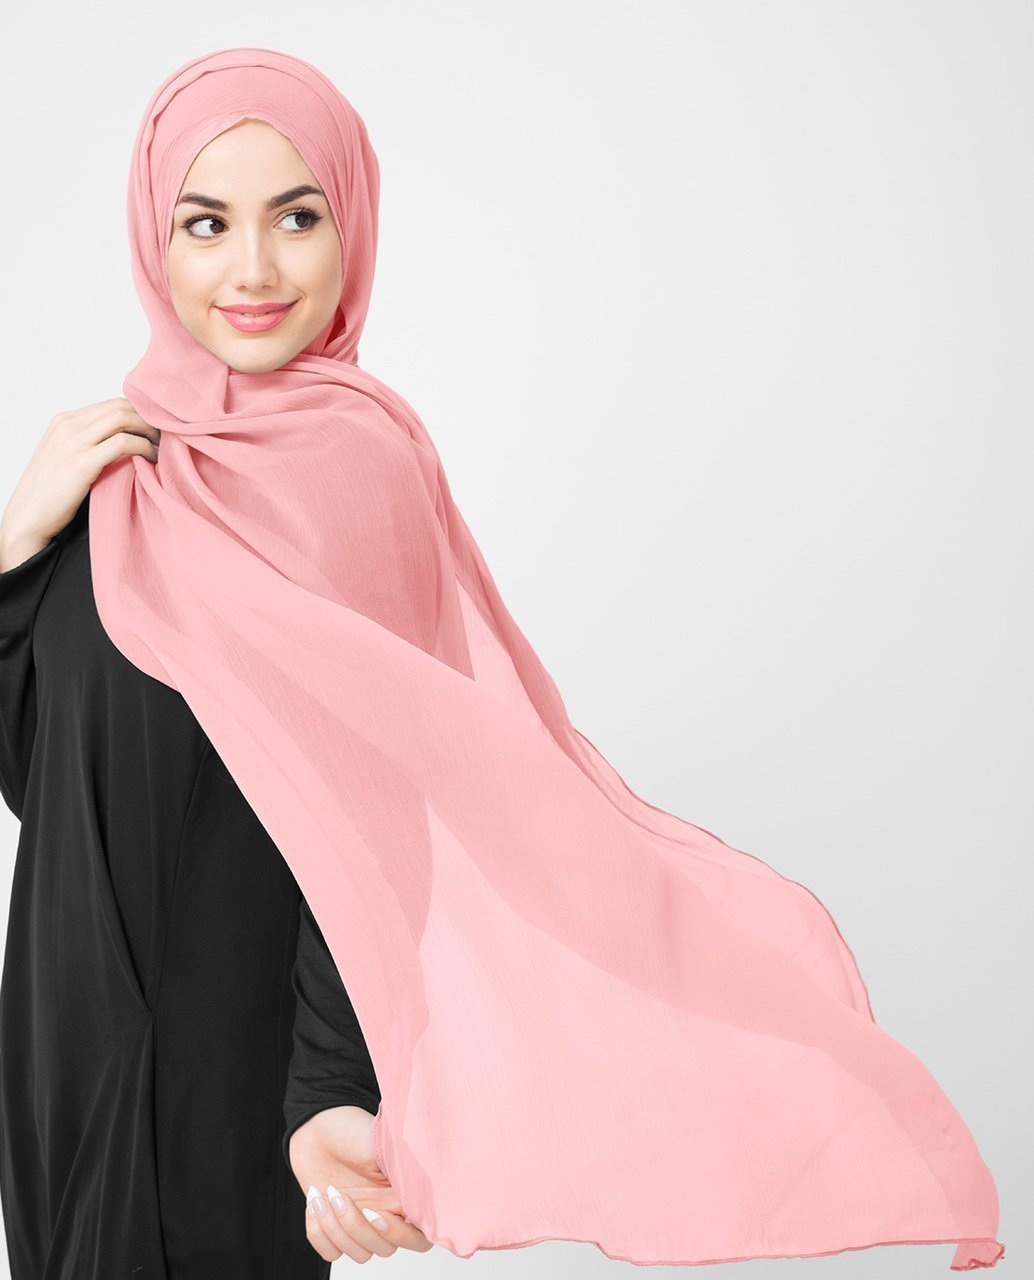 AfdhalHijaab Premium Chiffon Plain Bubble Hijab Hijaab Scarf, Fancy Hijab, Gold Printed Neutral Hijab Wedding Bridal Hijab, Chiffon Hijab, Eid Hijab Gift